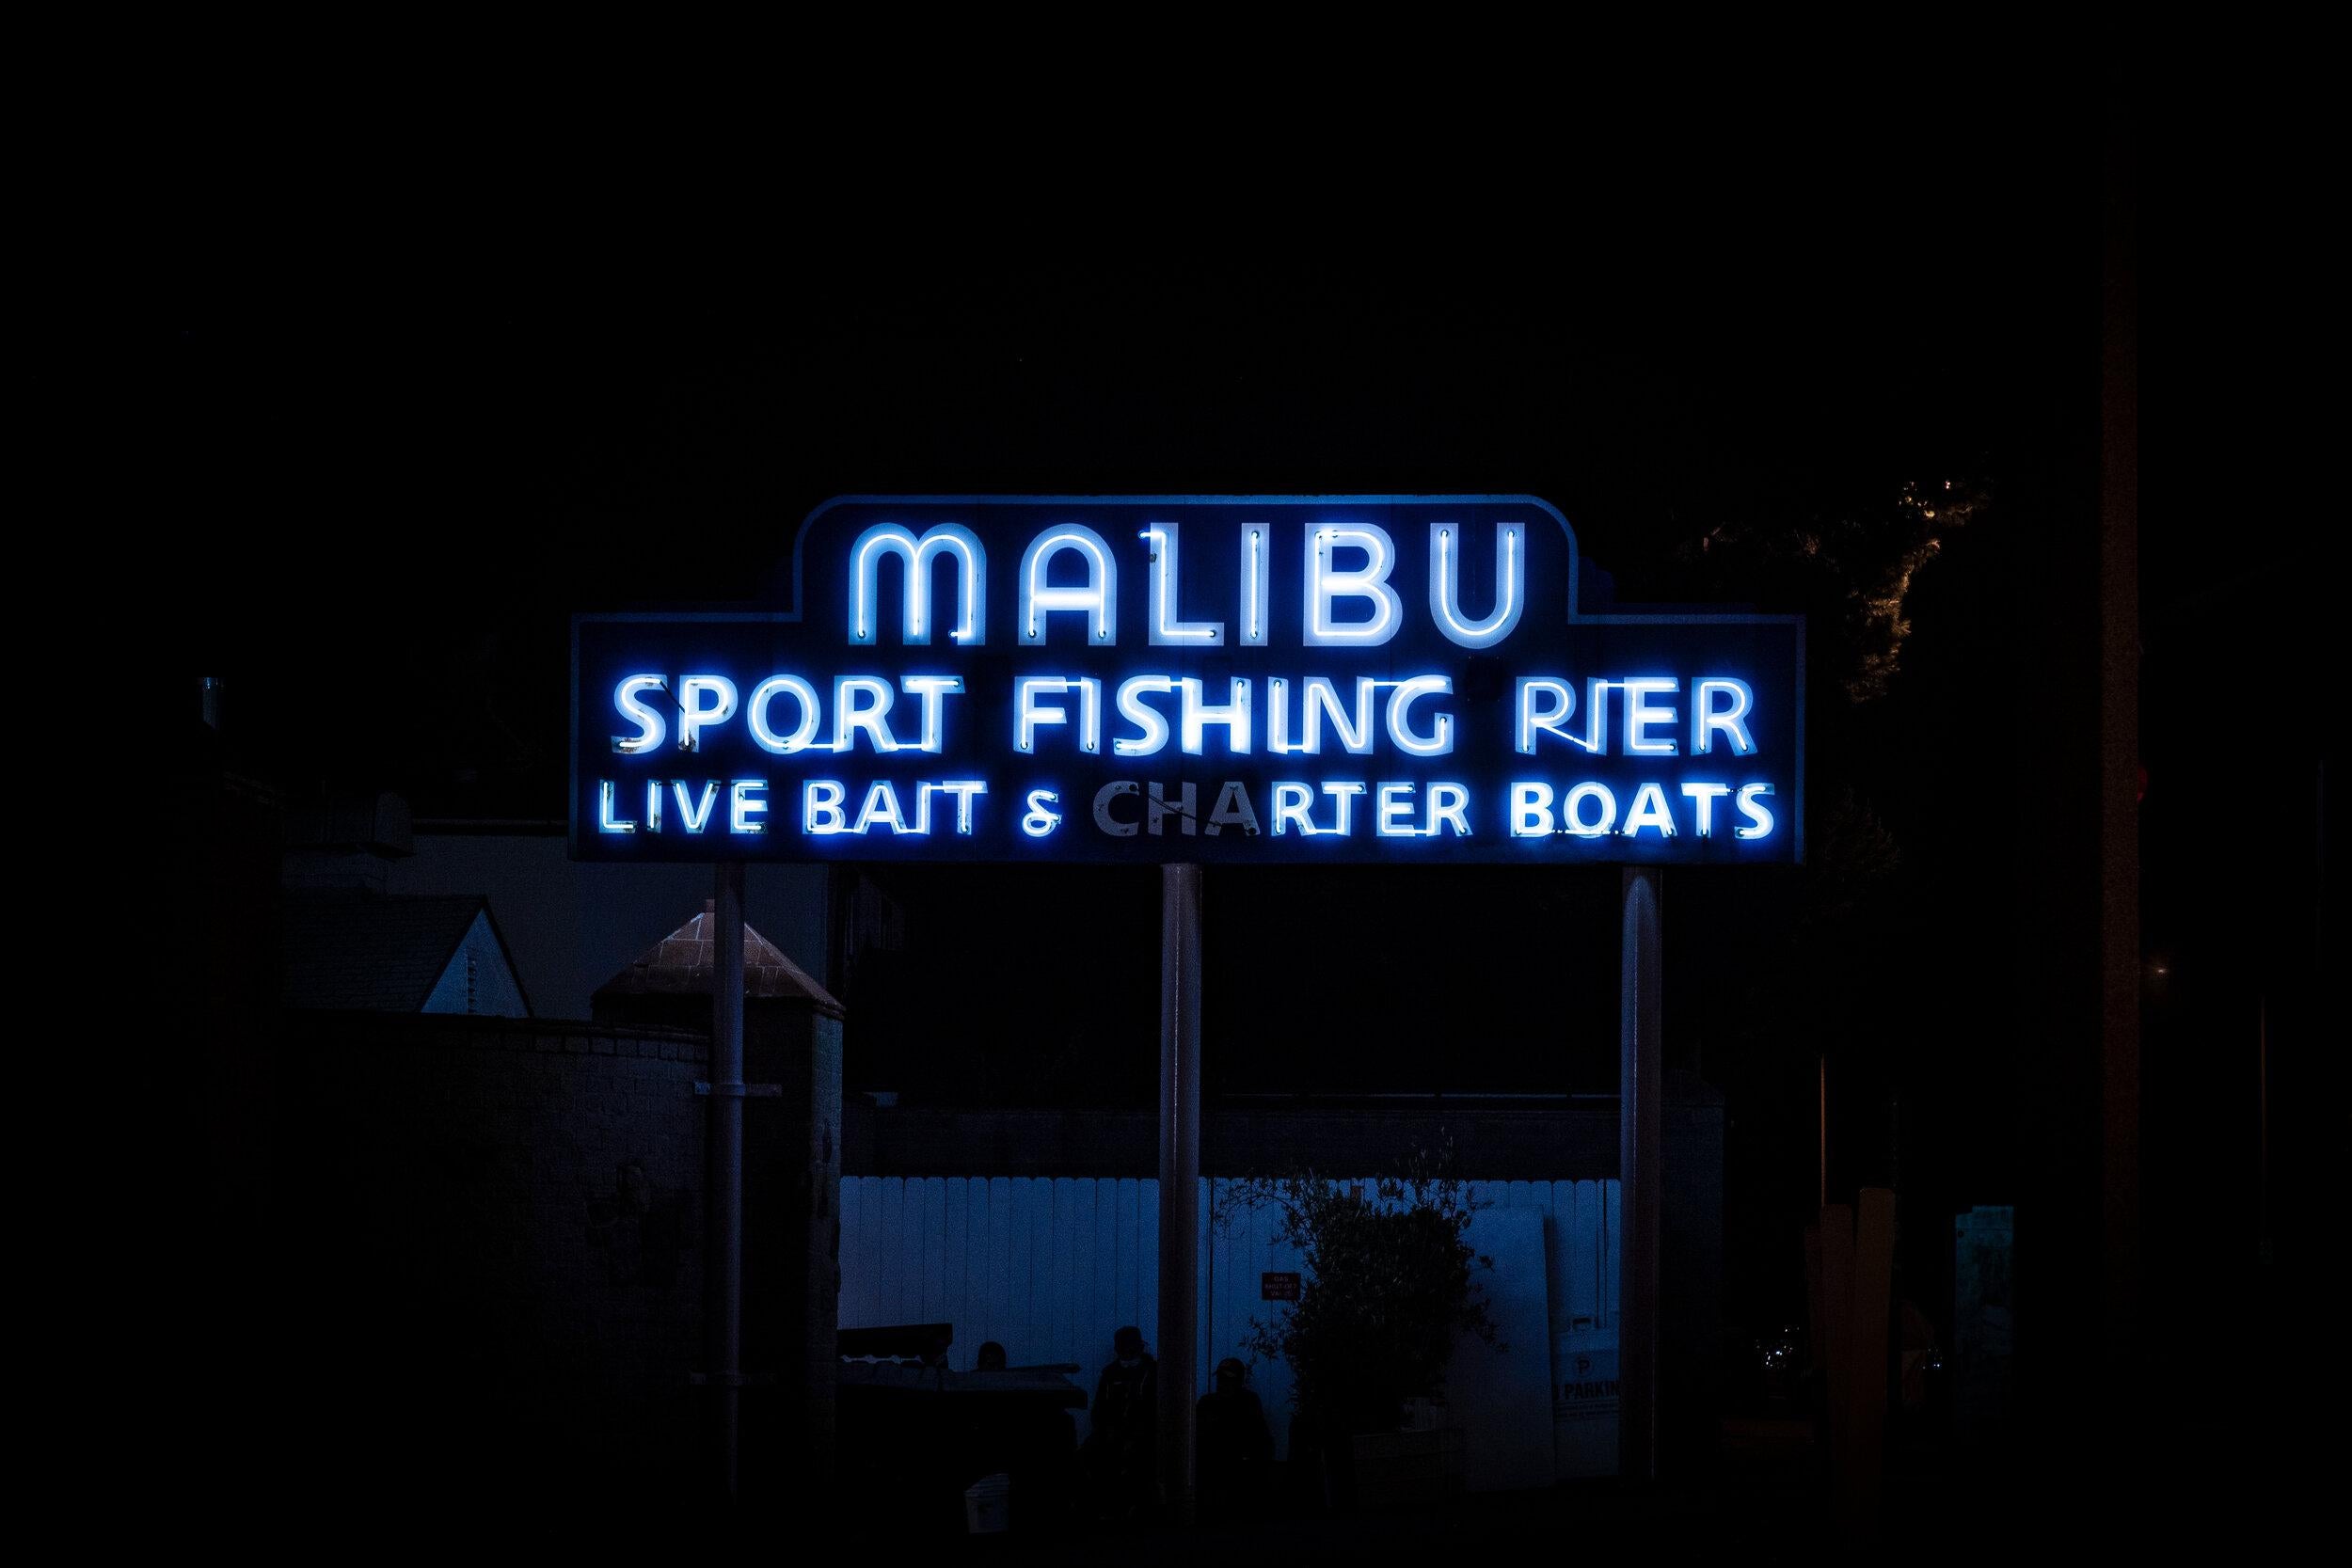 „Malibu Pier“ Fotografie 23" x 32" Zoll Auflage von 10 Stück von Oleg Char

Medium: Hahnemühle Barytpapier
Nicht gerahmt. Wird in einer Tube geliefert. 

Andere Größen verfügbar: 	
Auflage von 5:	28,8" x 40" Zoll
Auflage von 20 Stück:	14,4" x 20"